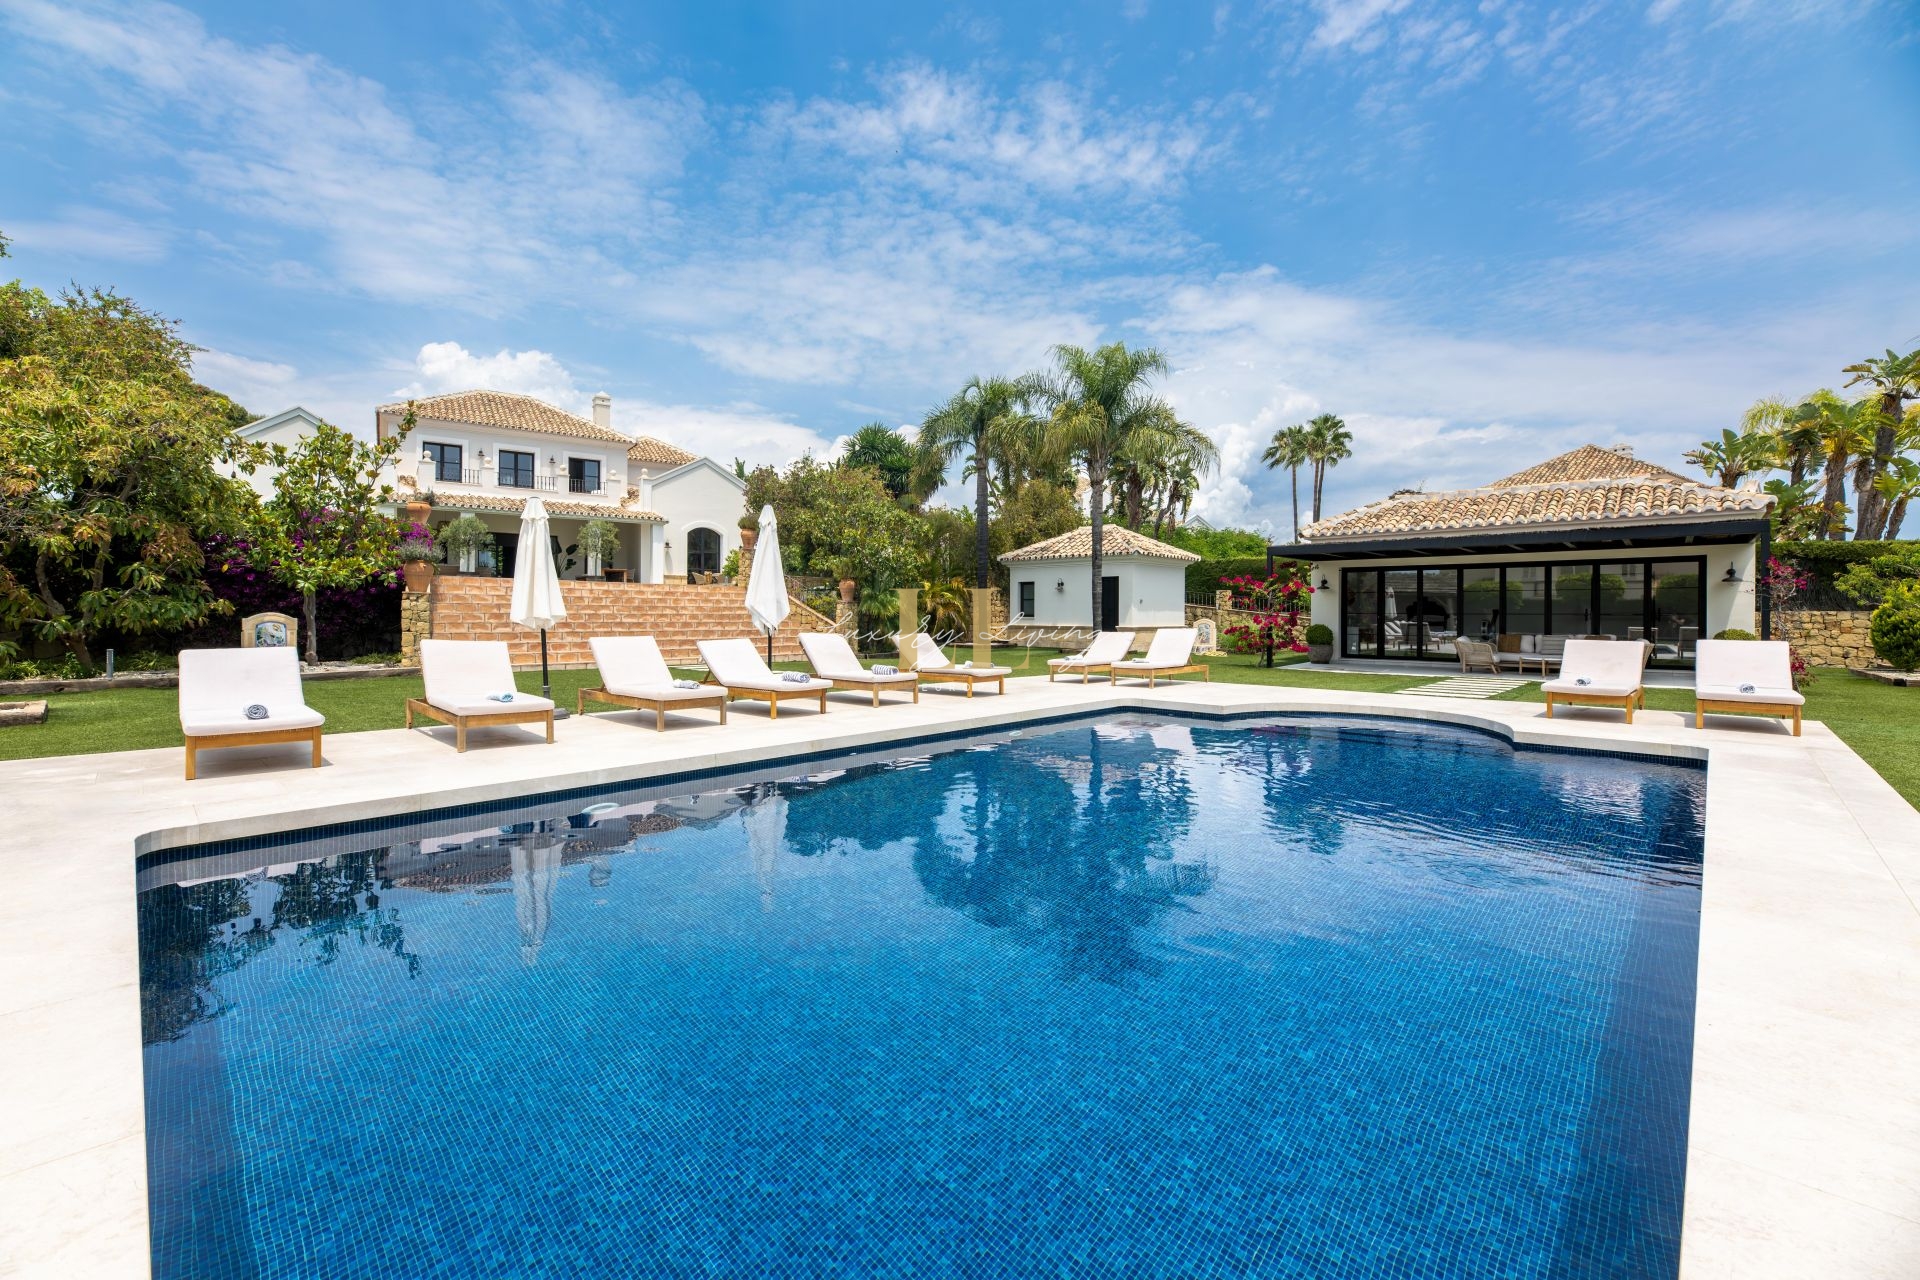 Villa Sapiro Accommodation in Marbella